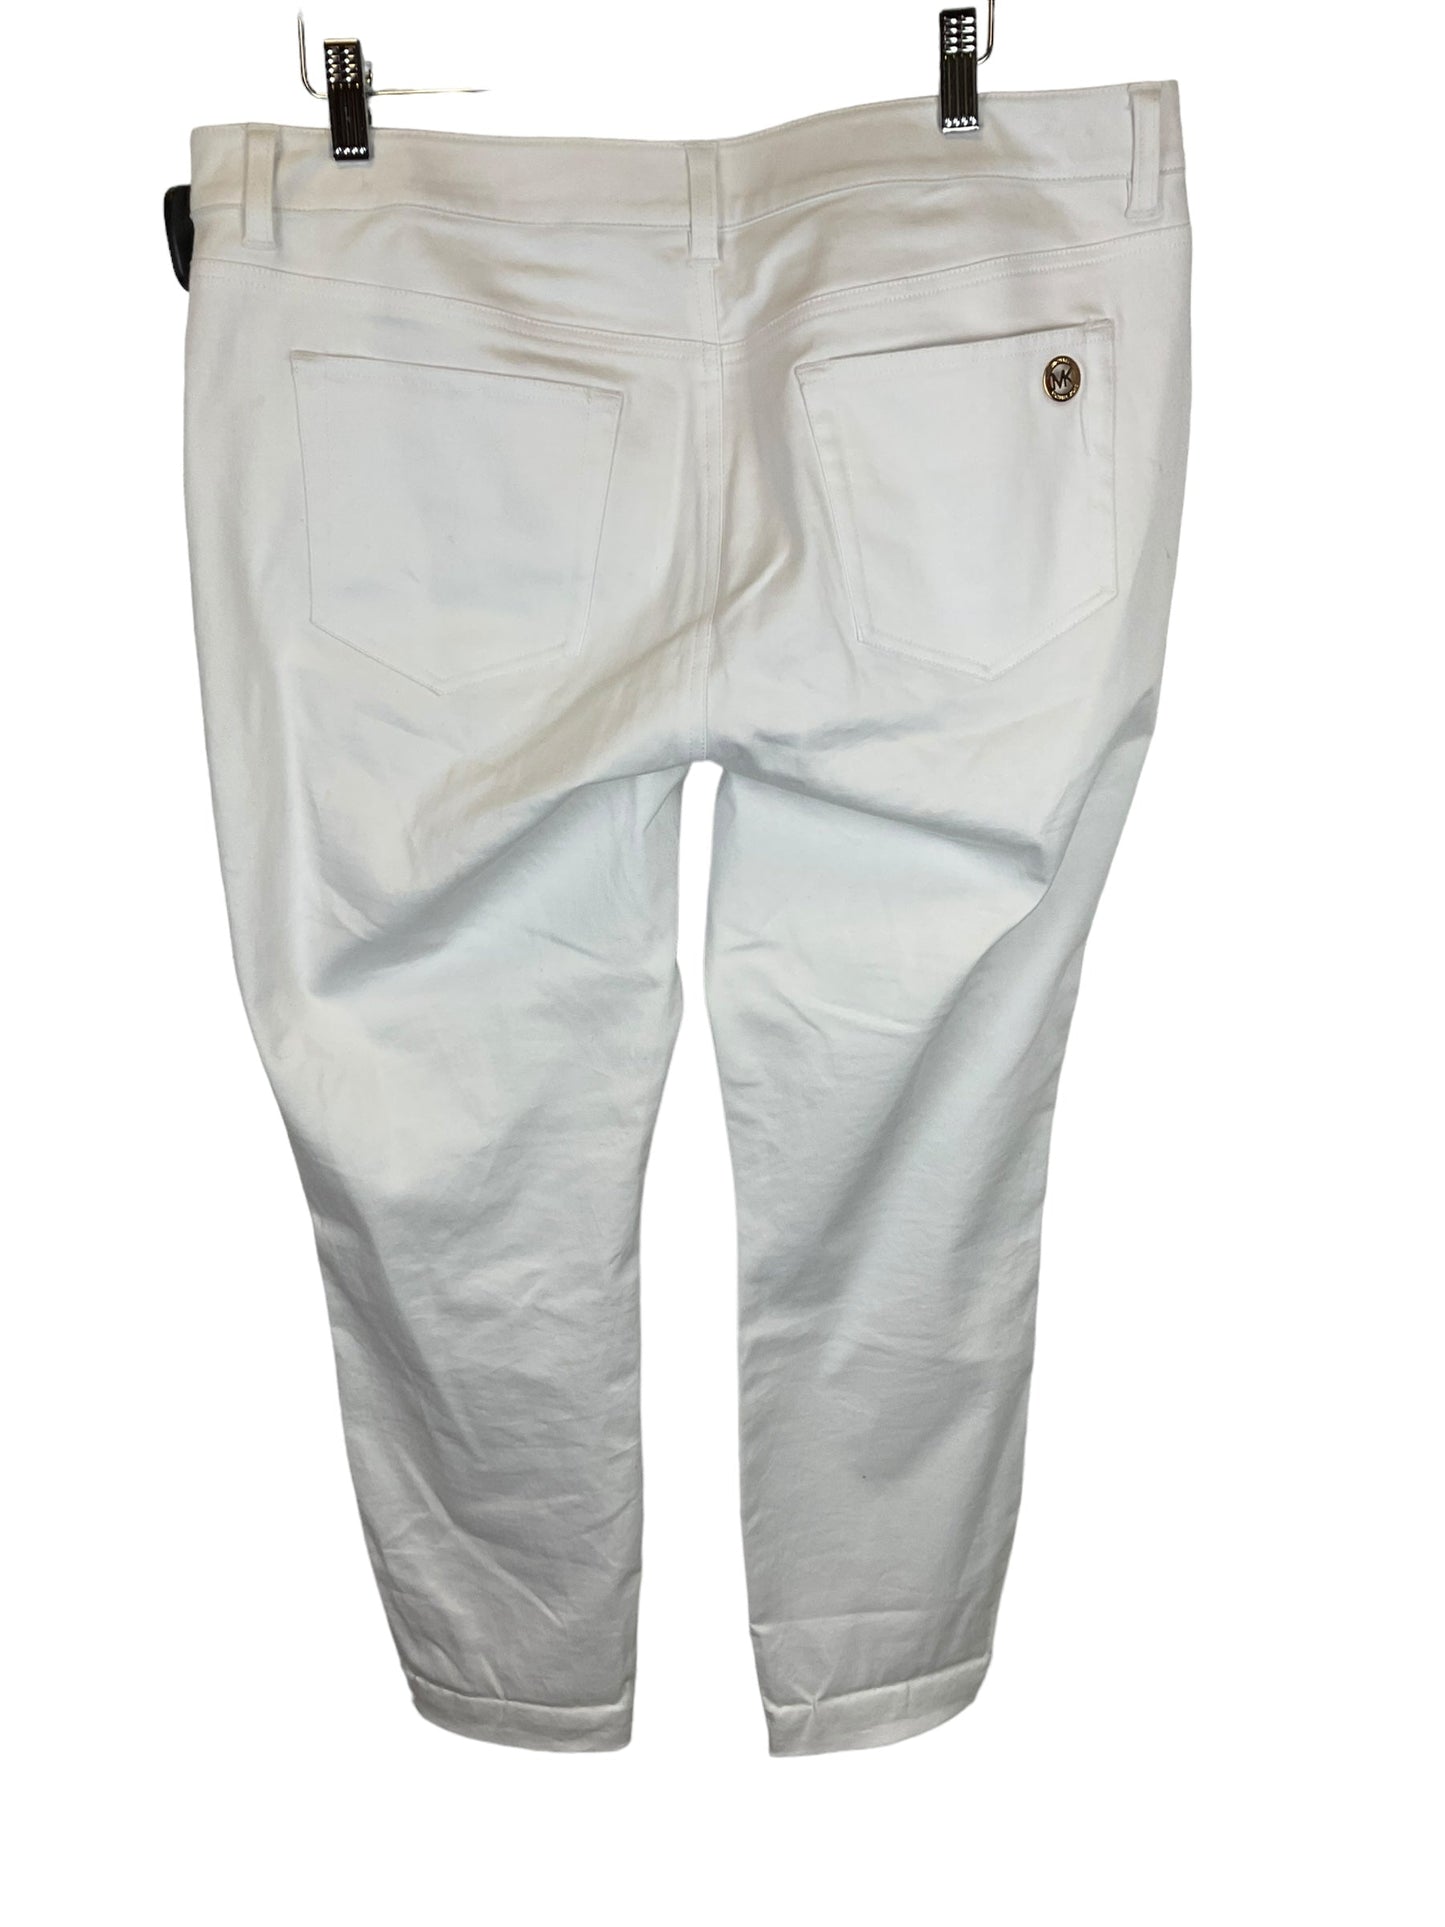 White Denim Jeans Designer Michael Kors, Size 12